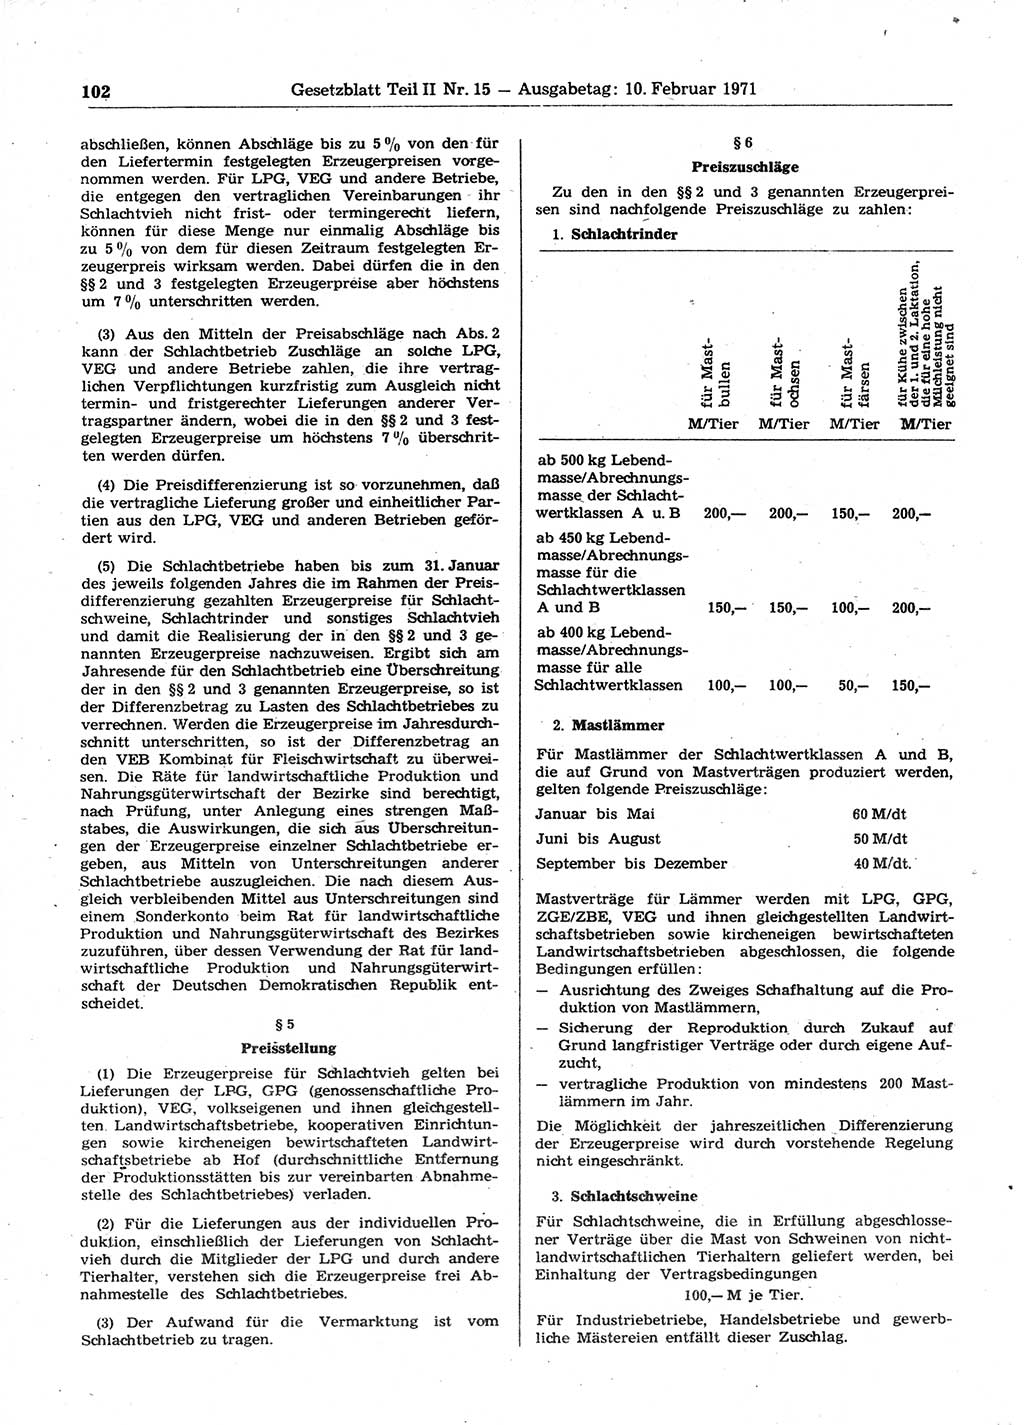 Gesetzblatt (GBl.) der Deutschen Demokratischen Republik (DDR) Teil ⅠⅠ 1971, Seite 102 (GBl. DDR ⅠⅠ 1971, S. 102)